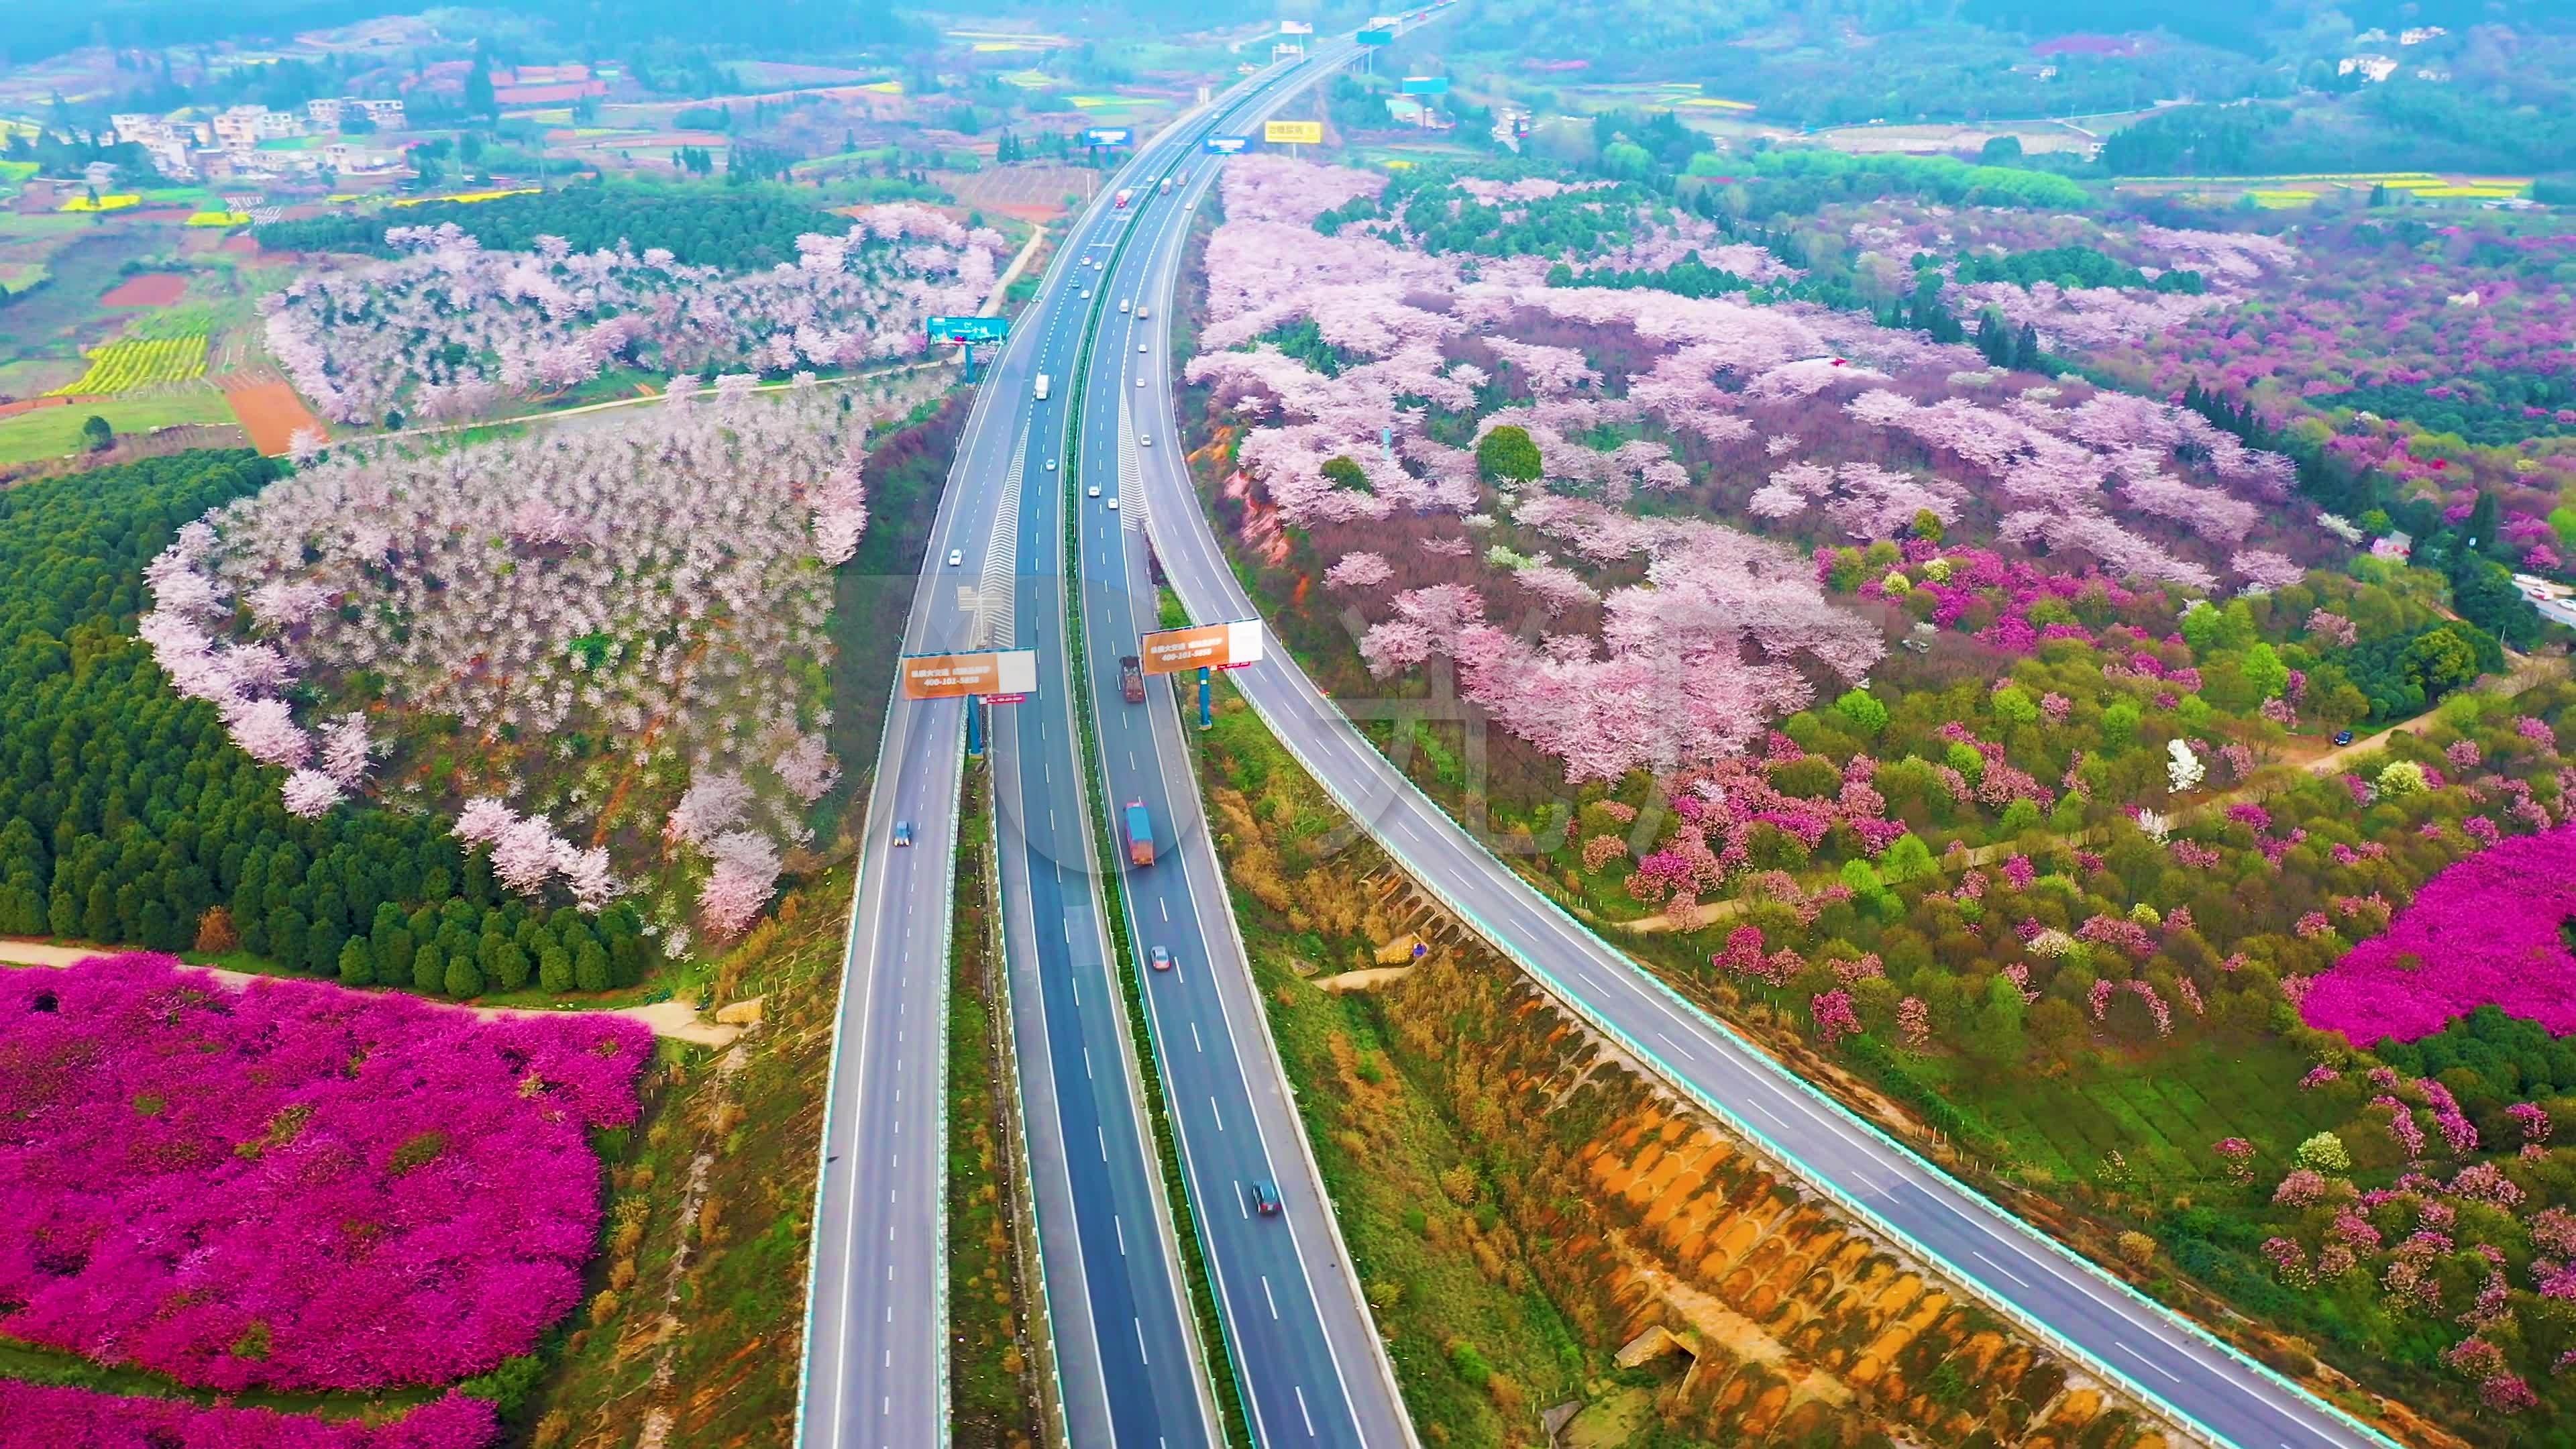 【沿着高速看中国】连获大奖的最美高速公路：云南大丽高速 - 中国日报网